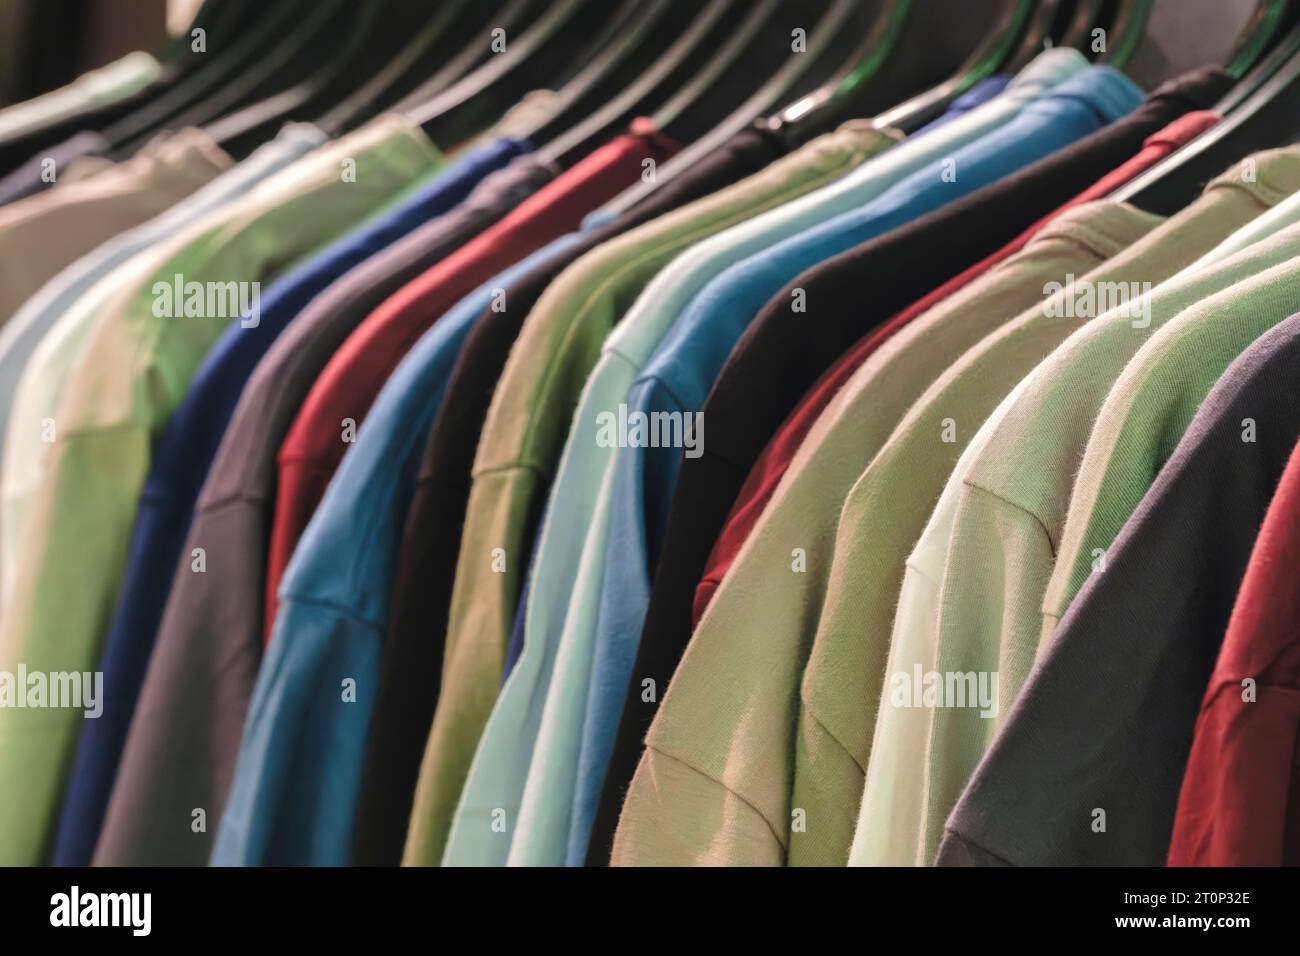 rangée de nombreux t-shirts frais en coton nouveau tissu dans des couleurs arc-en-ciel colorées accrochés sur le rail de vêtements en wrdrobe. Banque D'Images